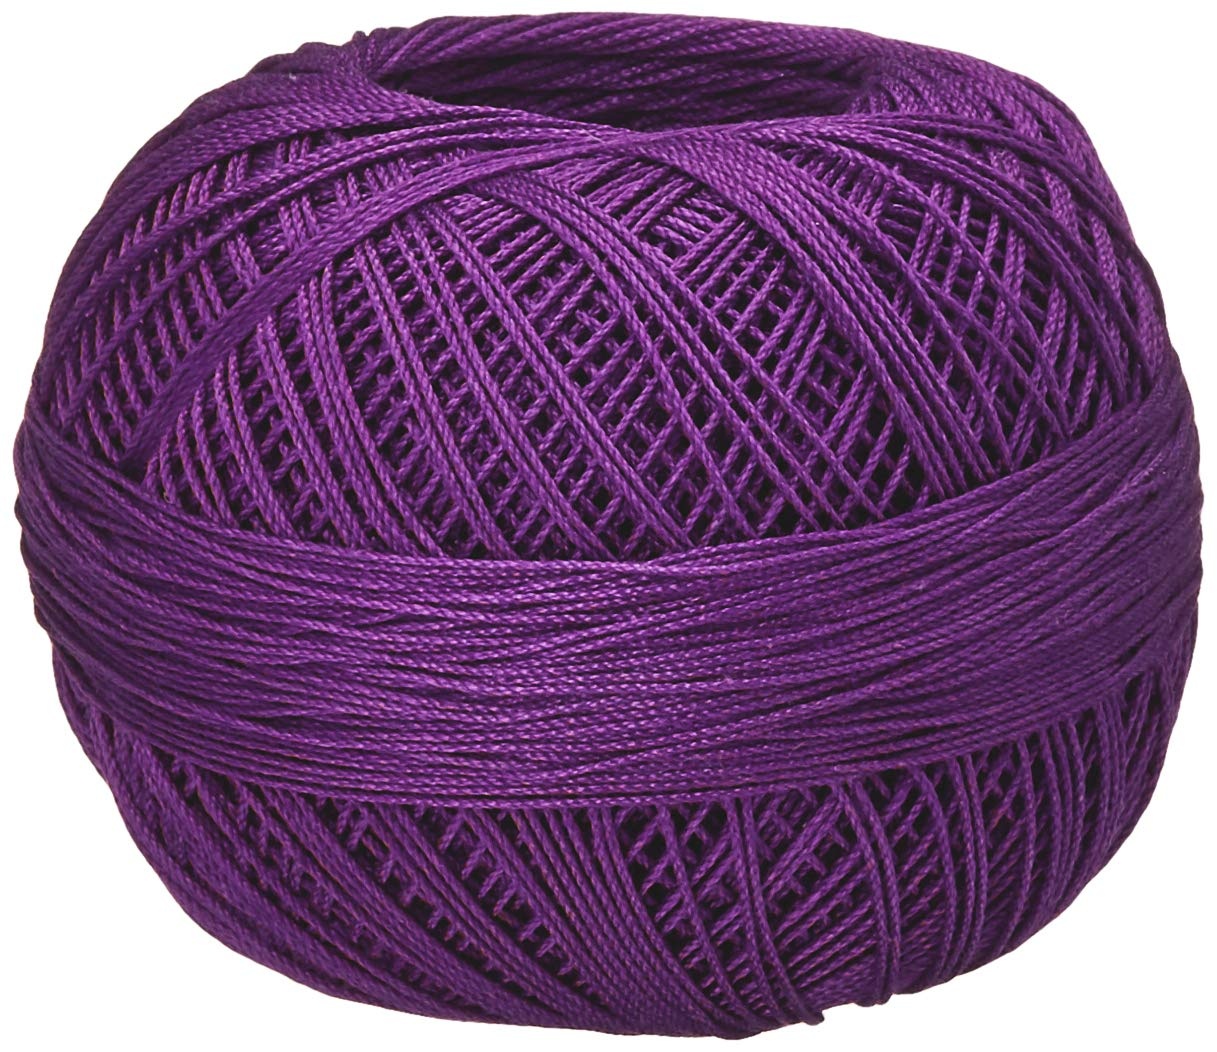 Handy Hands Lizbeth Cordonnet Cotton Size 10-Purple Iris DK - image 1 of 2